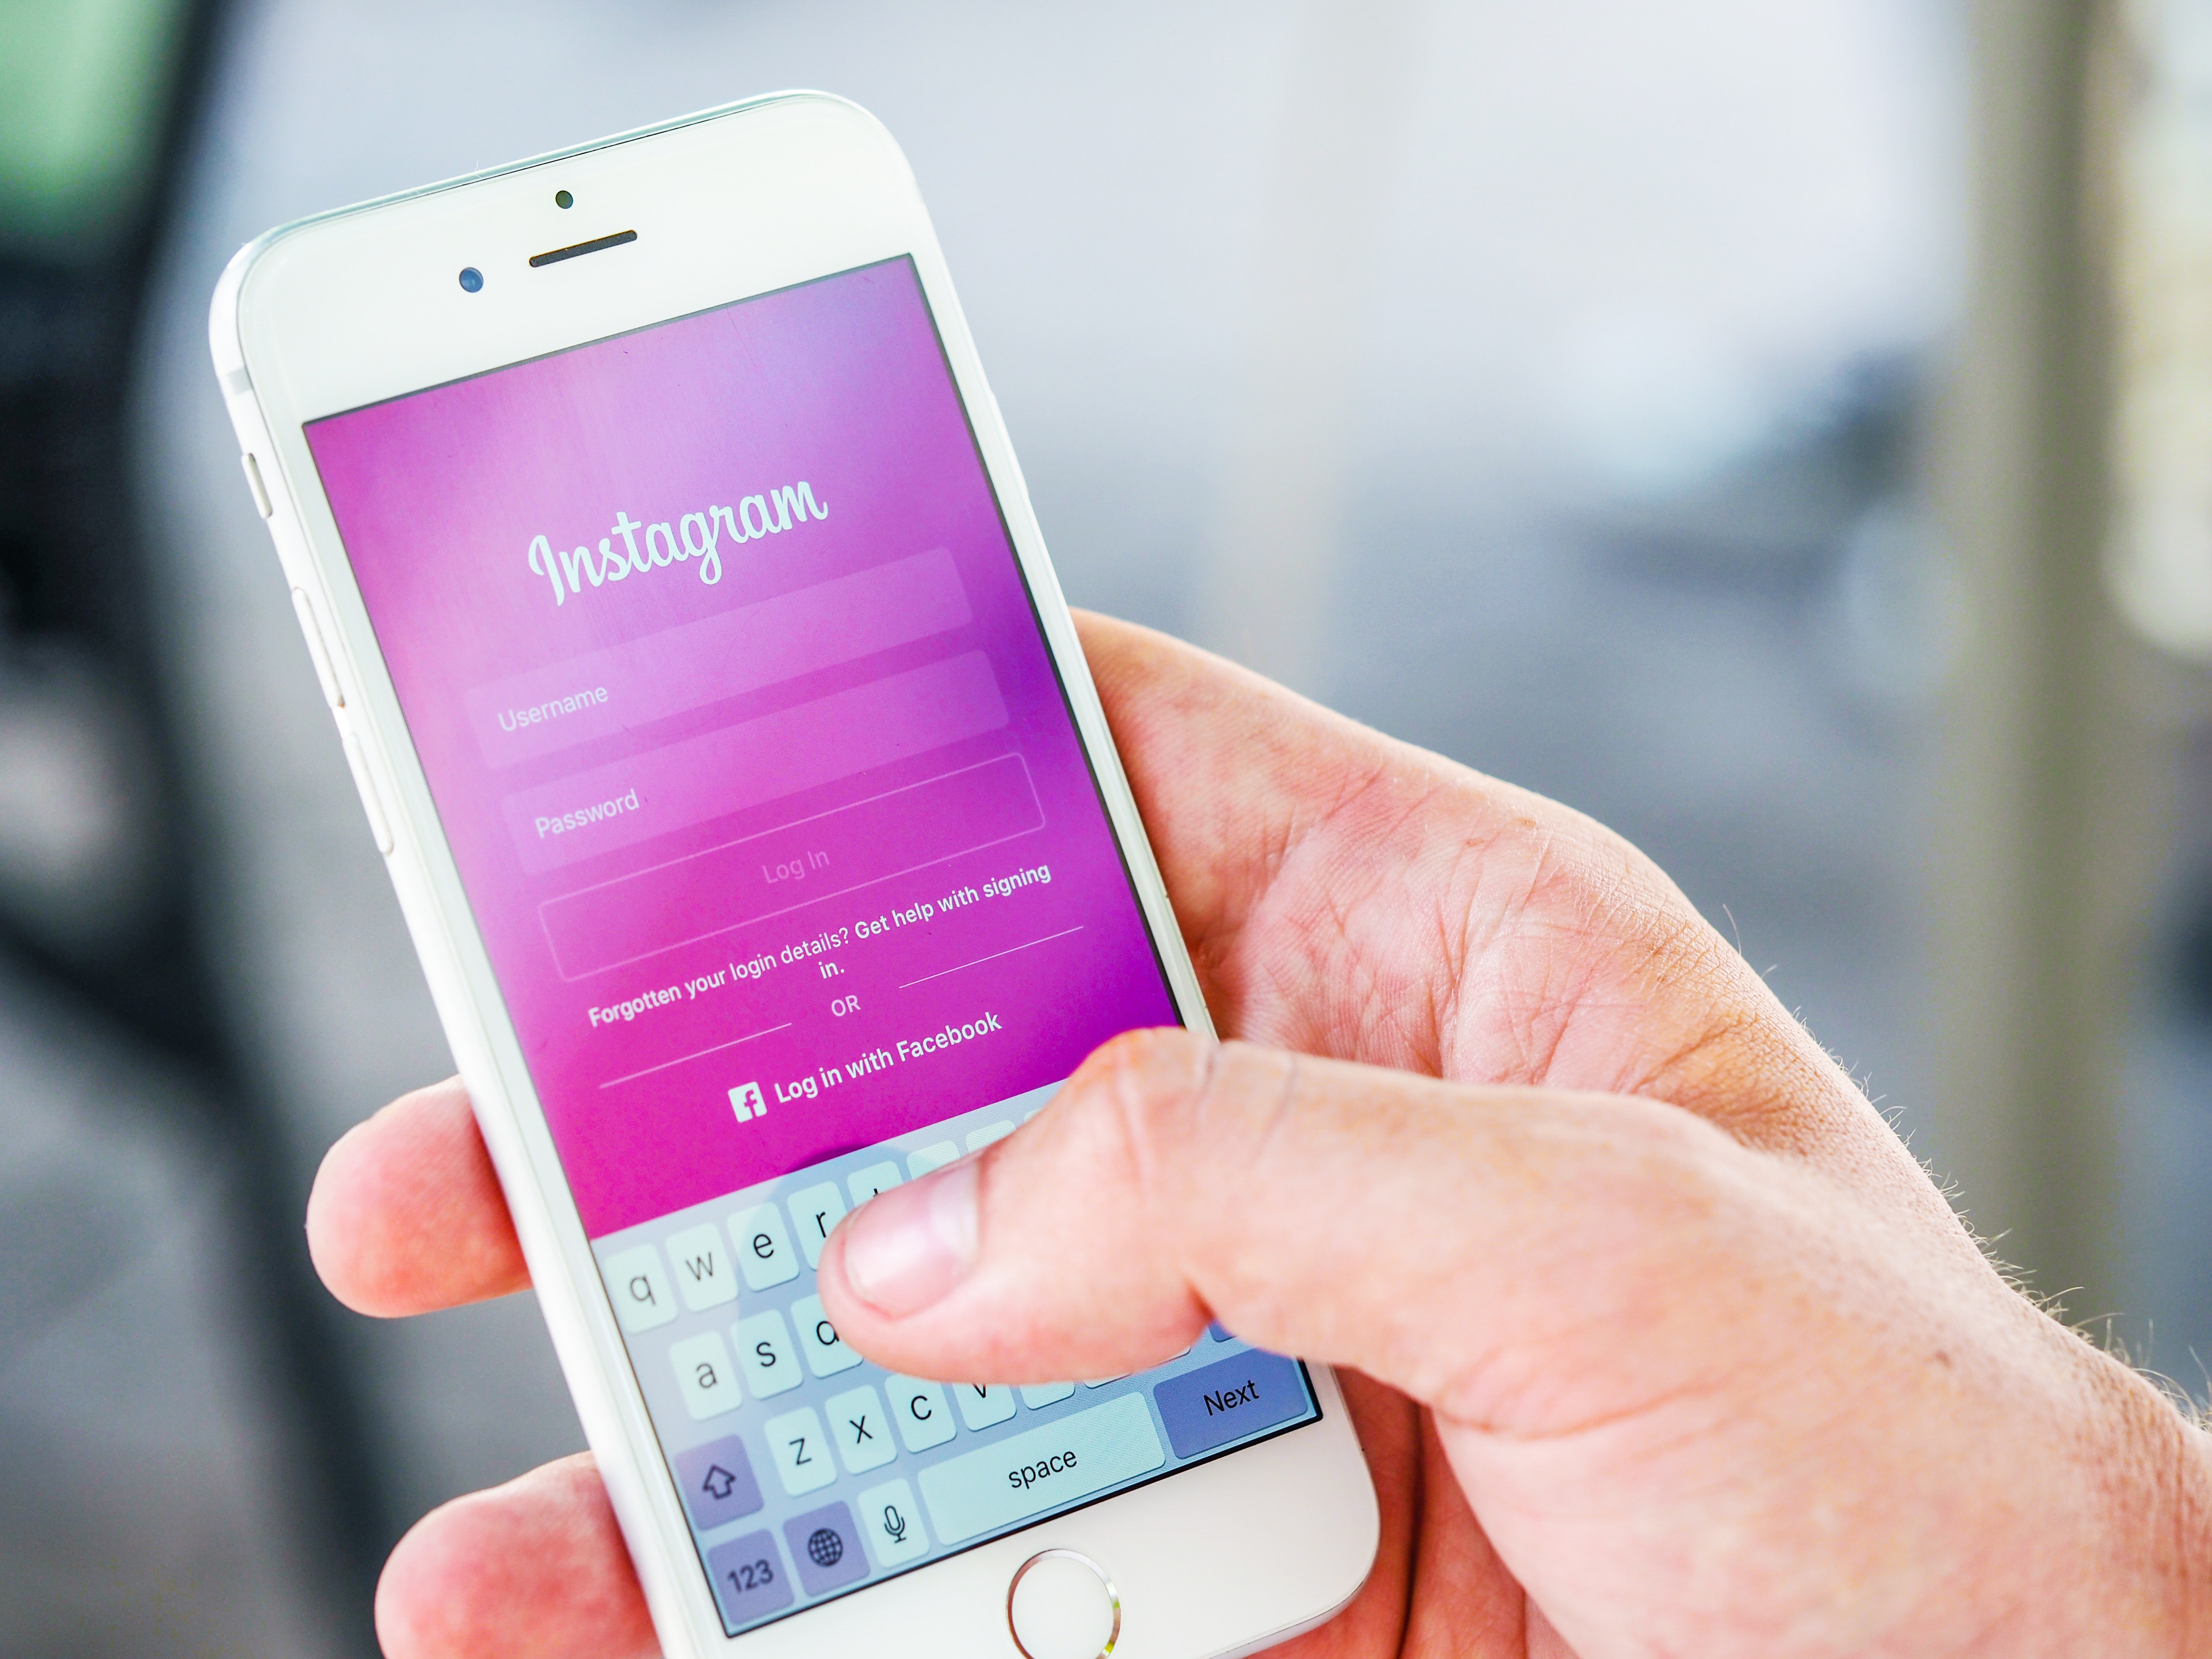 como conseguir seguidores no Instagram - Smartphone em uma mão com a tela de login do Instagram aberta